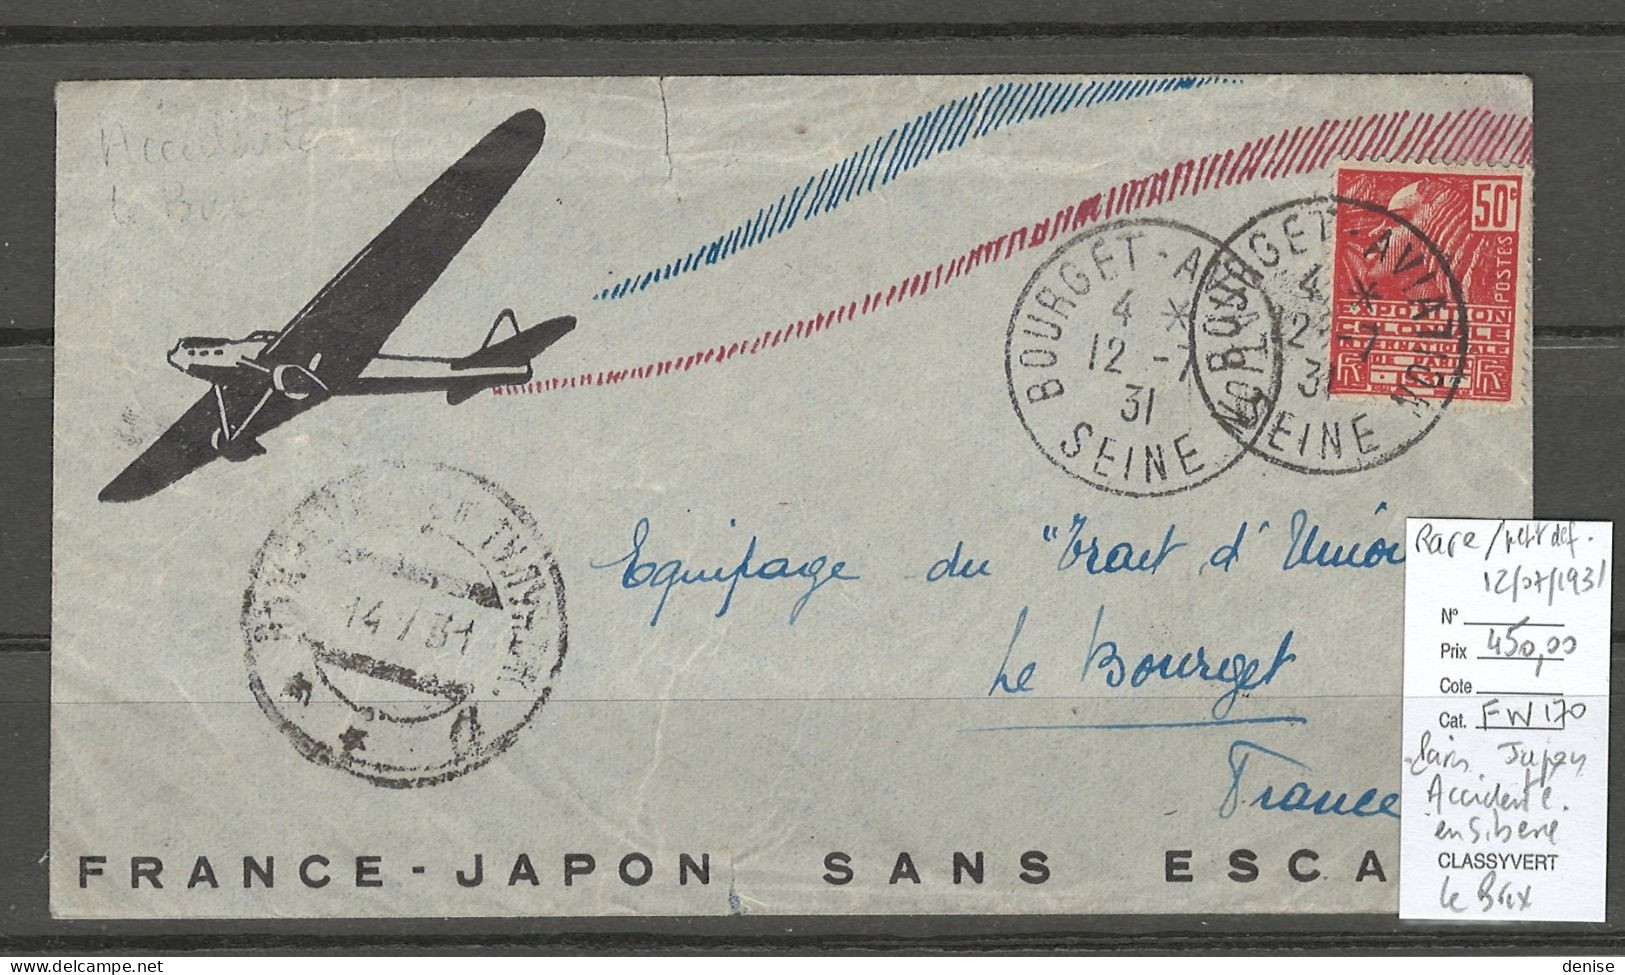 France - Japon - Sans Escale - ACCIDENTE EN SIBERIE - 50 % DE REMISE - LE BRIX - 12/07/1931 - 1927-1959 Covers & Documents